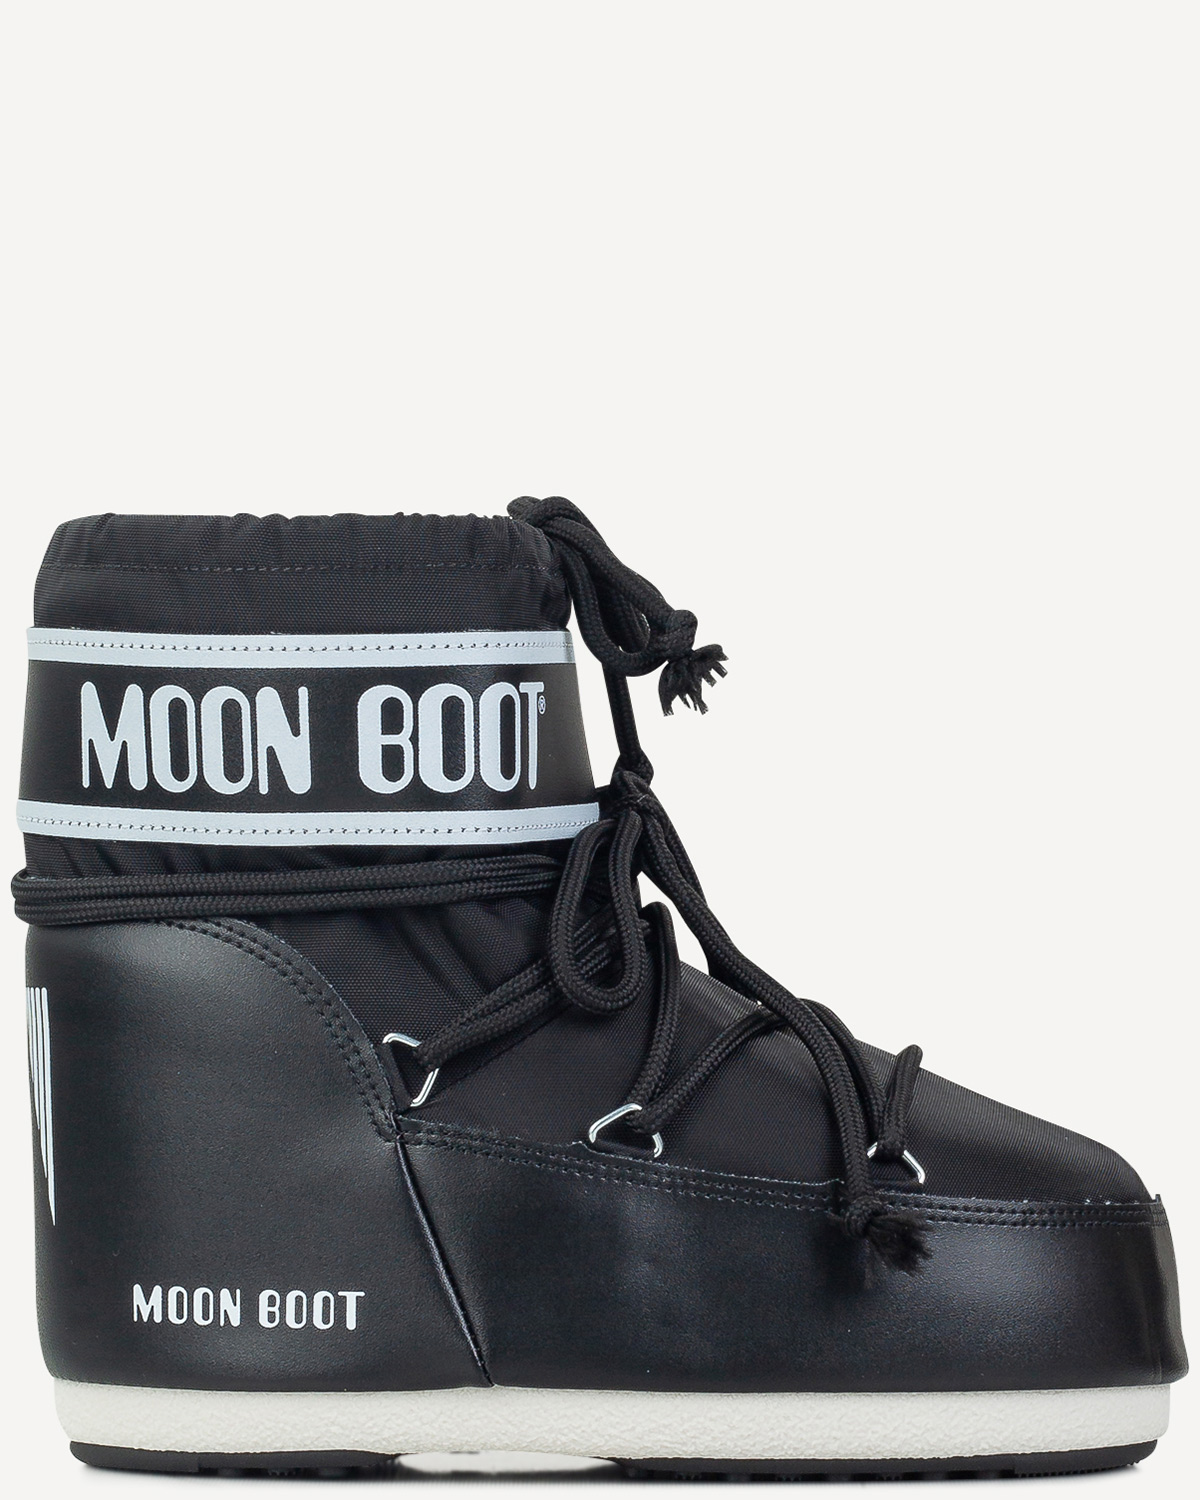 Γυναίκα - Μπότες - Μποτάκια - Moonboot Μαύρο